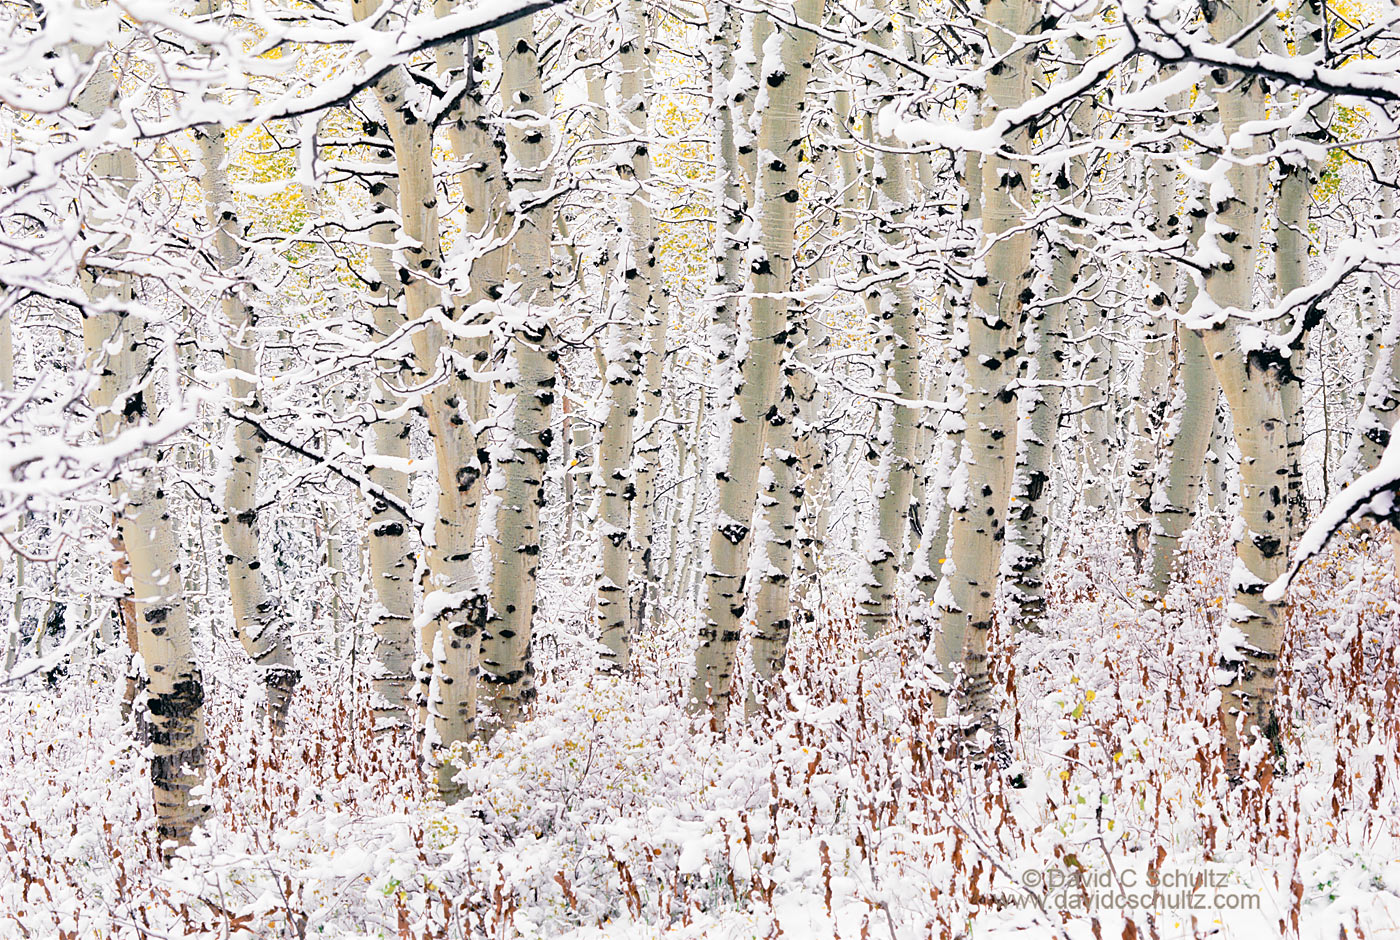 Snow covered aspen trees, Utah - Image #3-812